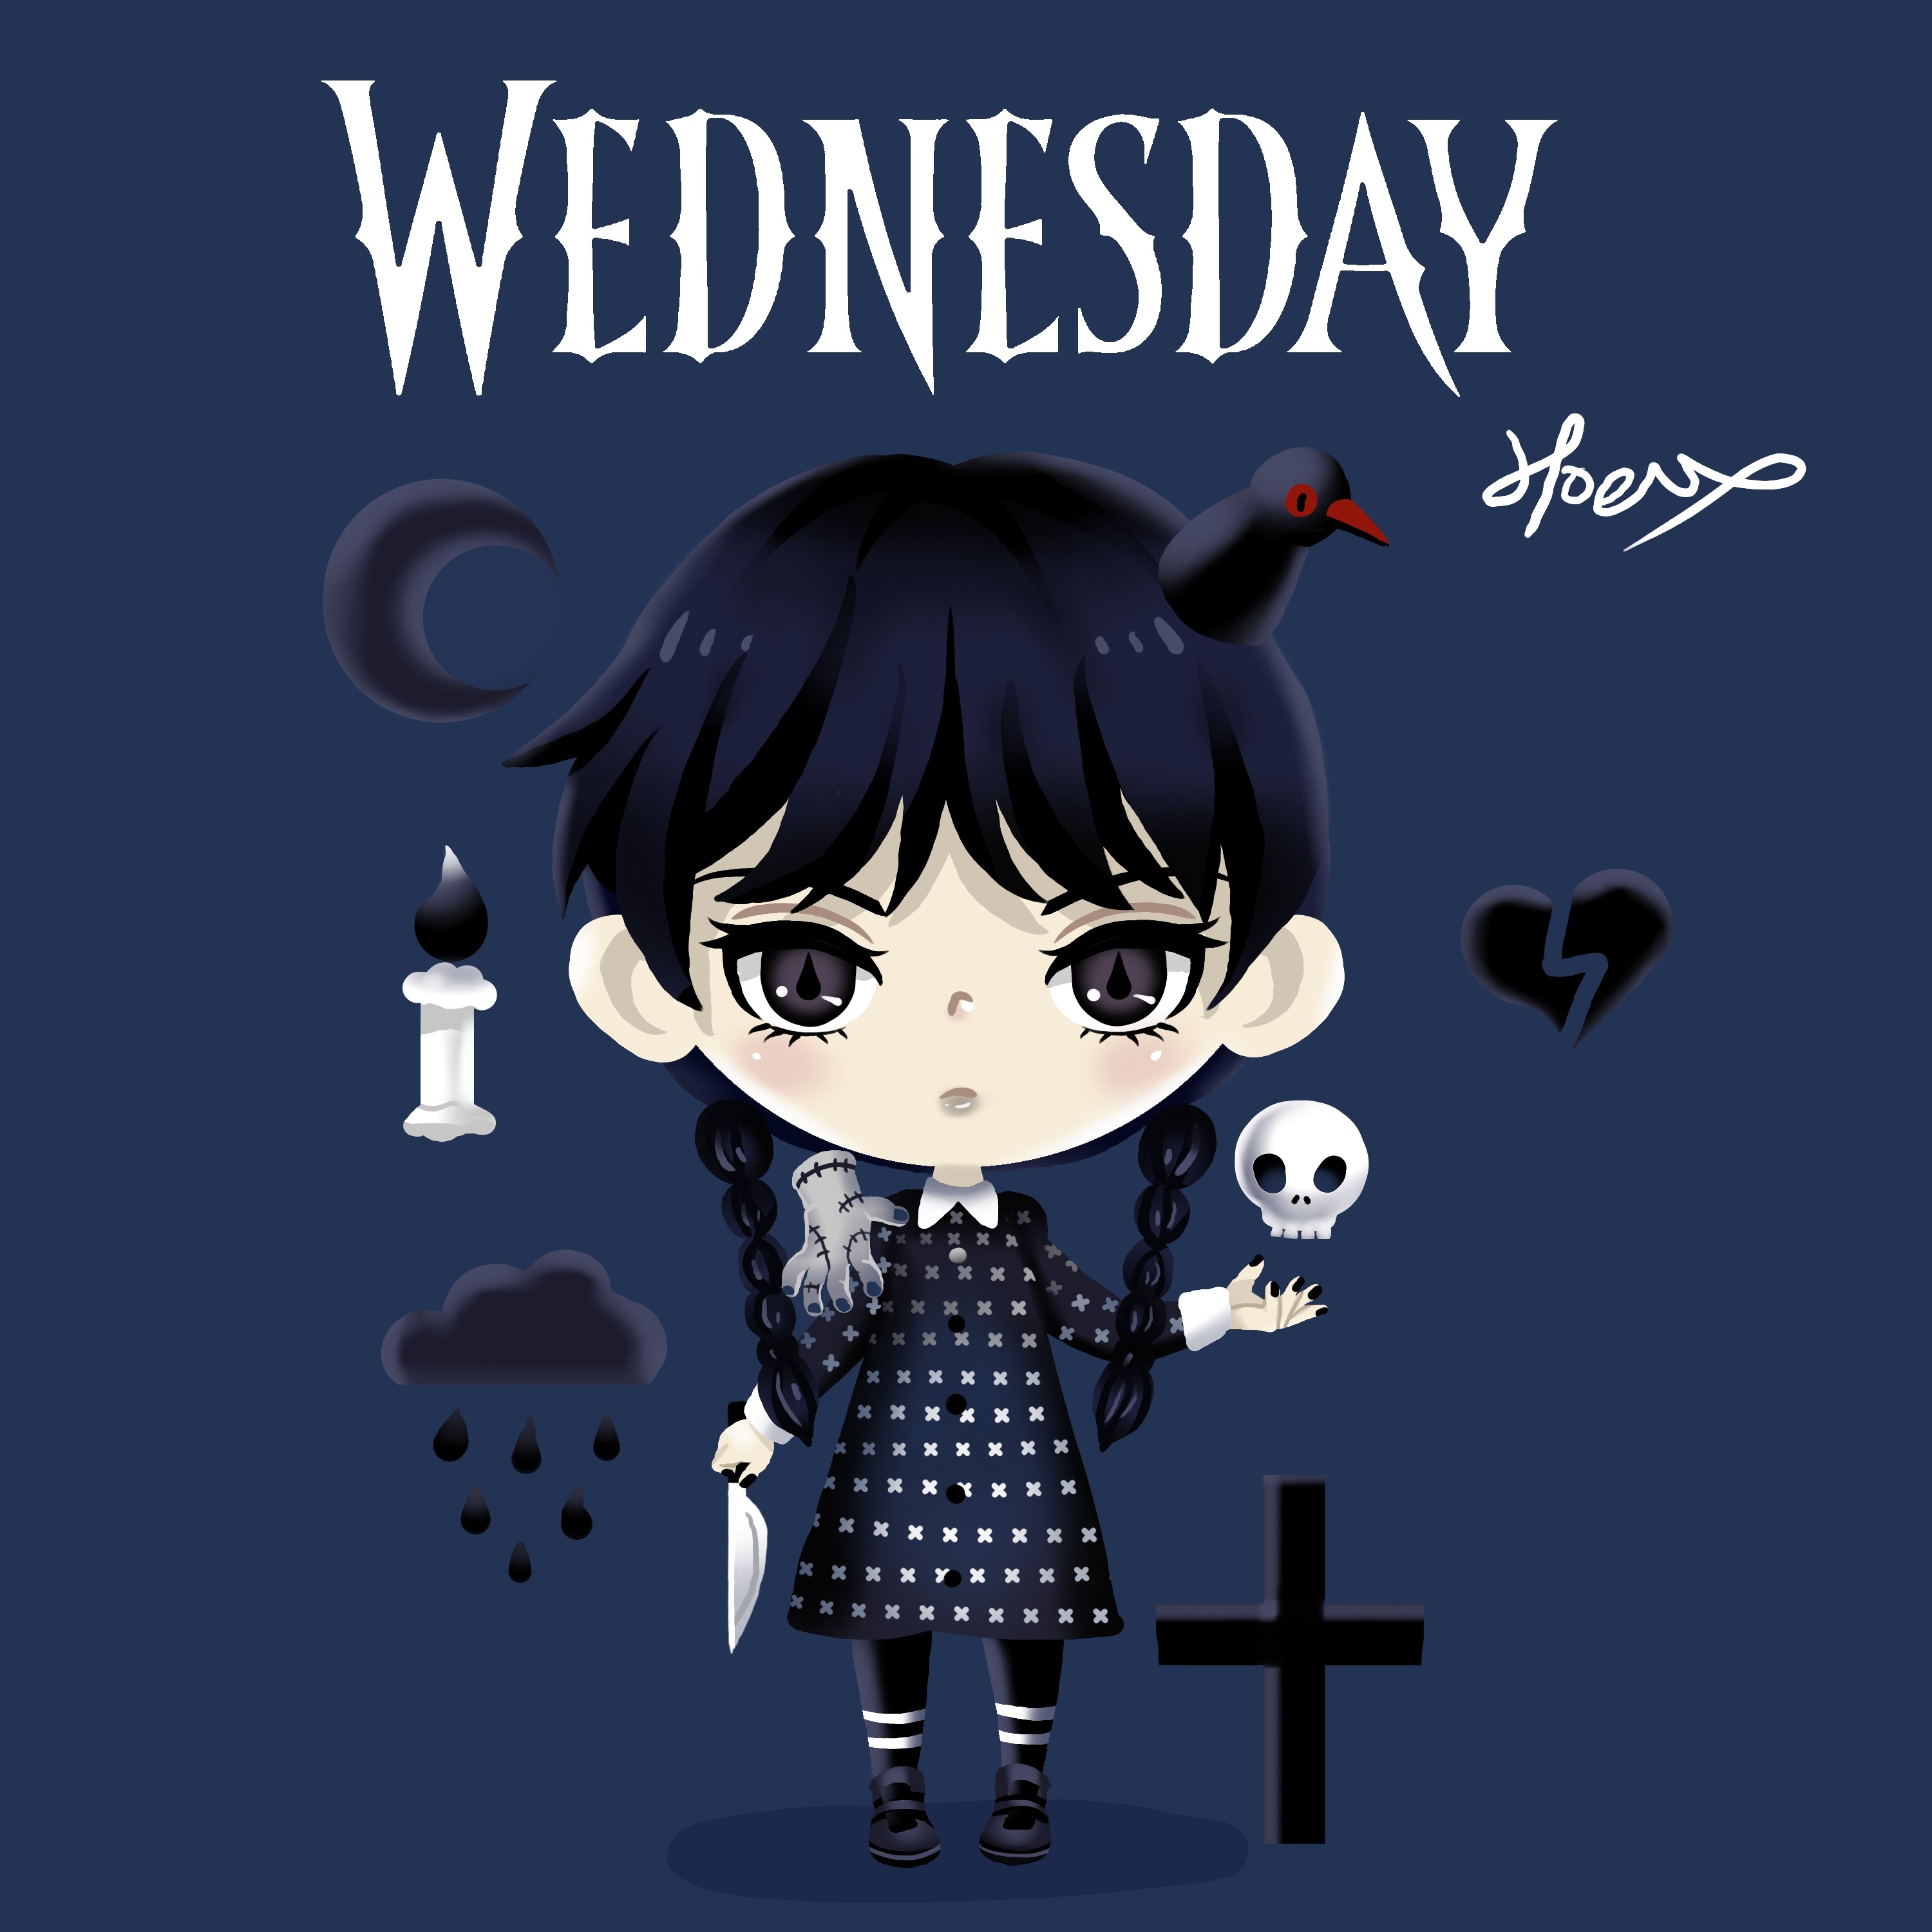 二等身Q版-阿達一族The Addams Family-星期三Wednesday-HOELEX.jpg